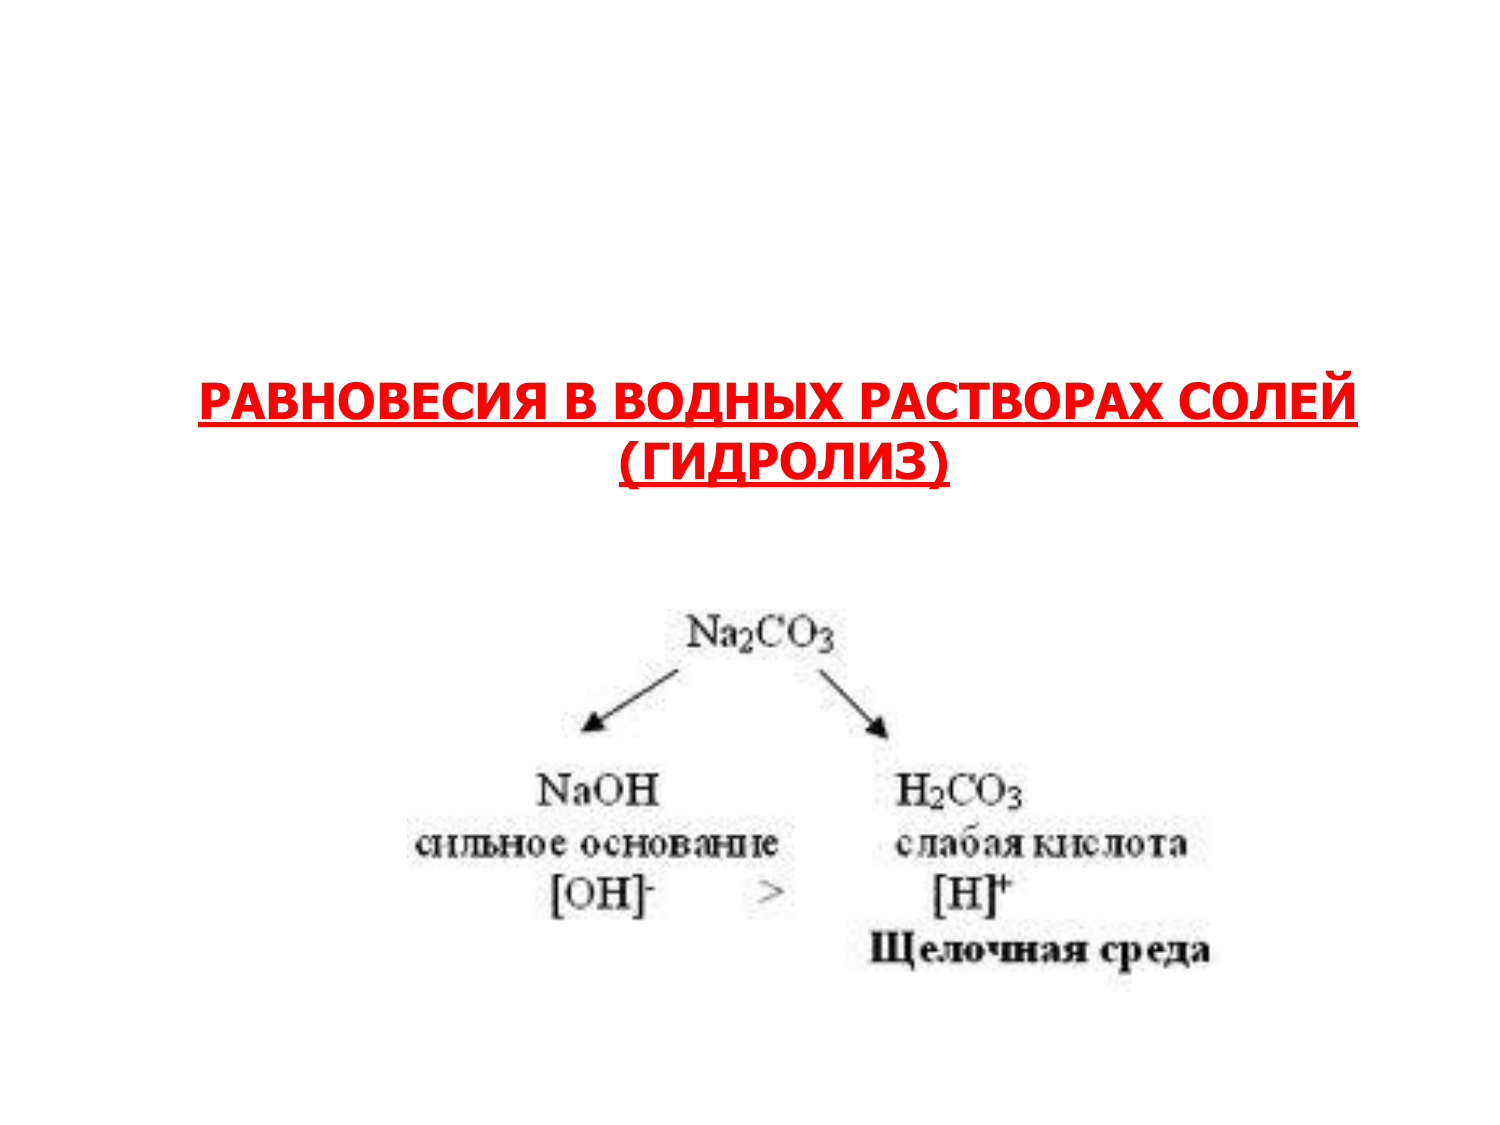 Нитрат свинца формула соли. Гидролиз солей PB no3. Гидролиз солей нитрат свинца 2. Гидролиз нитрата свинца 2. PB(no3)2 реакция гидролиза.